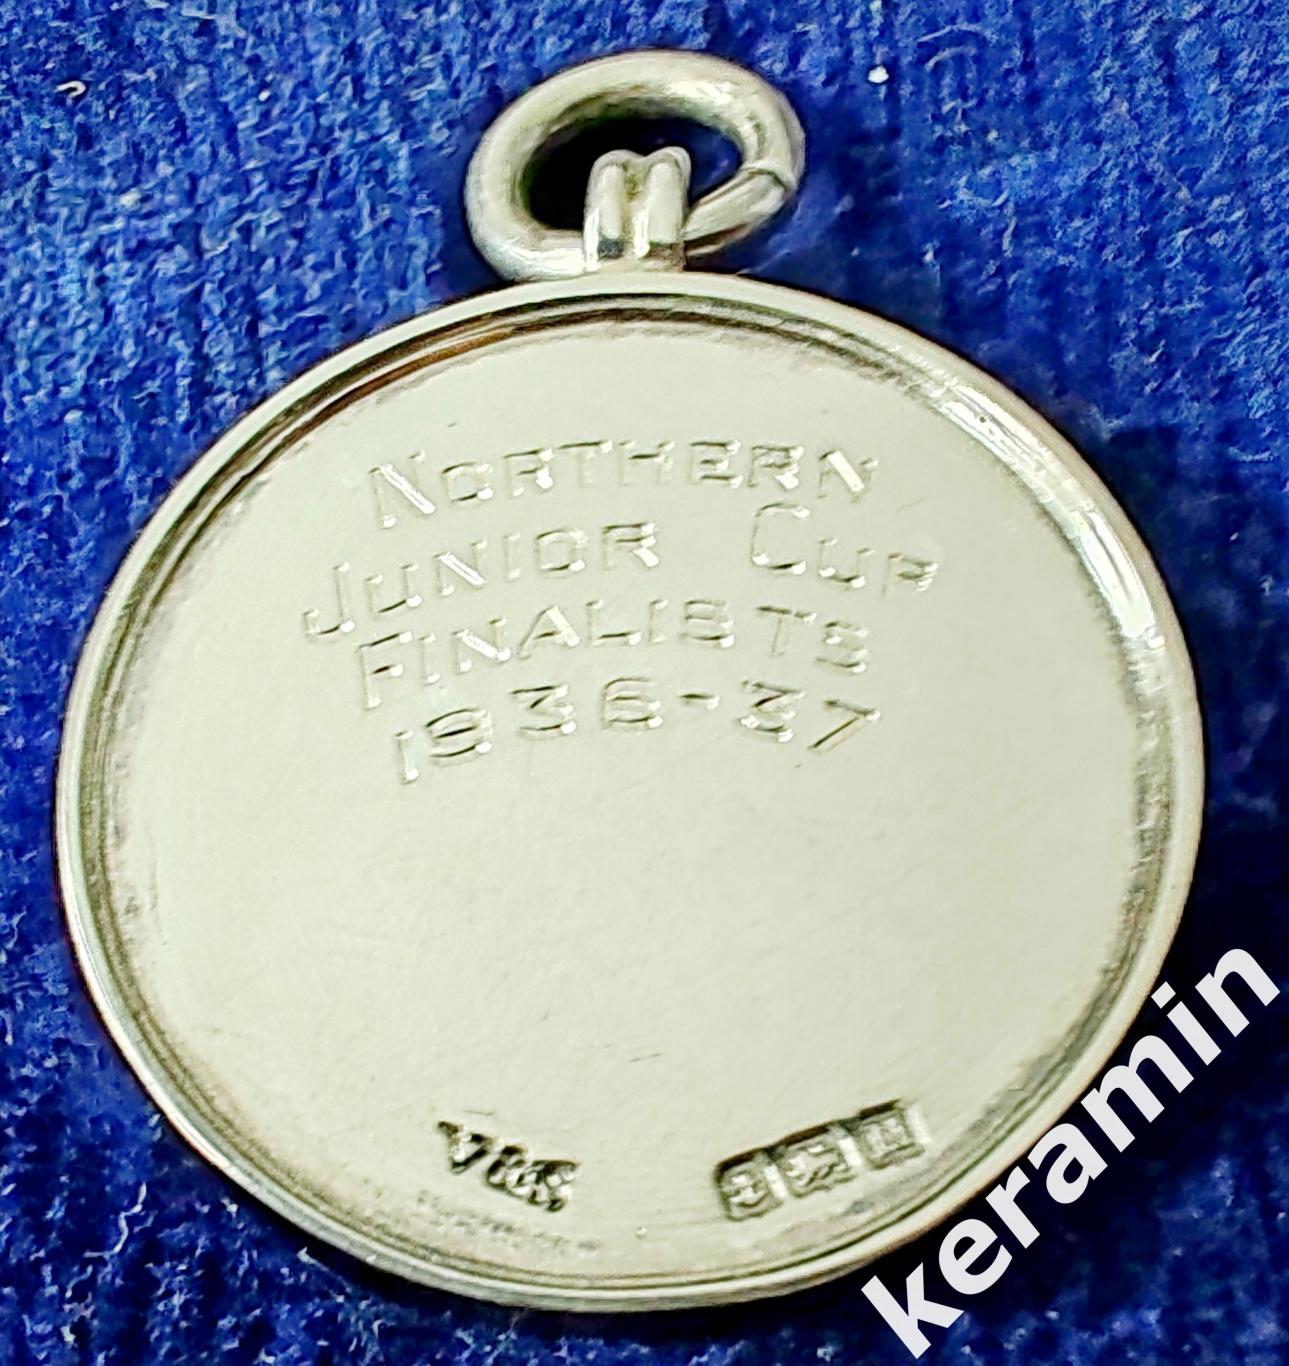 1936-37 медальон из 9-каратного золота и эмали Футбольной ассоциации Глостершира 3